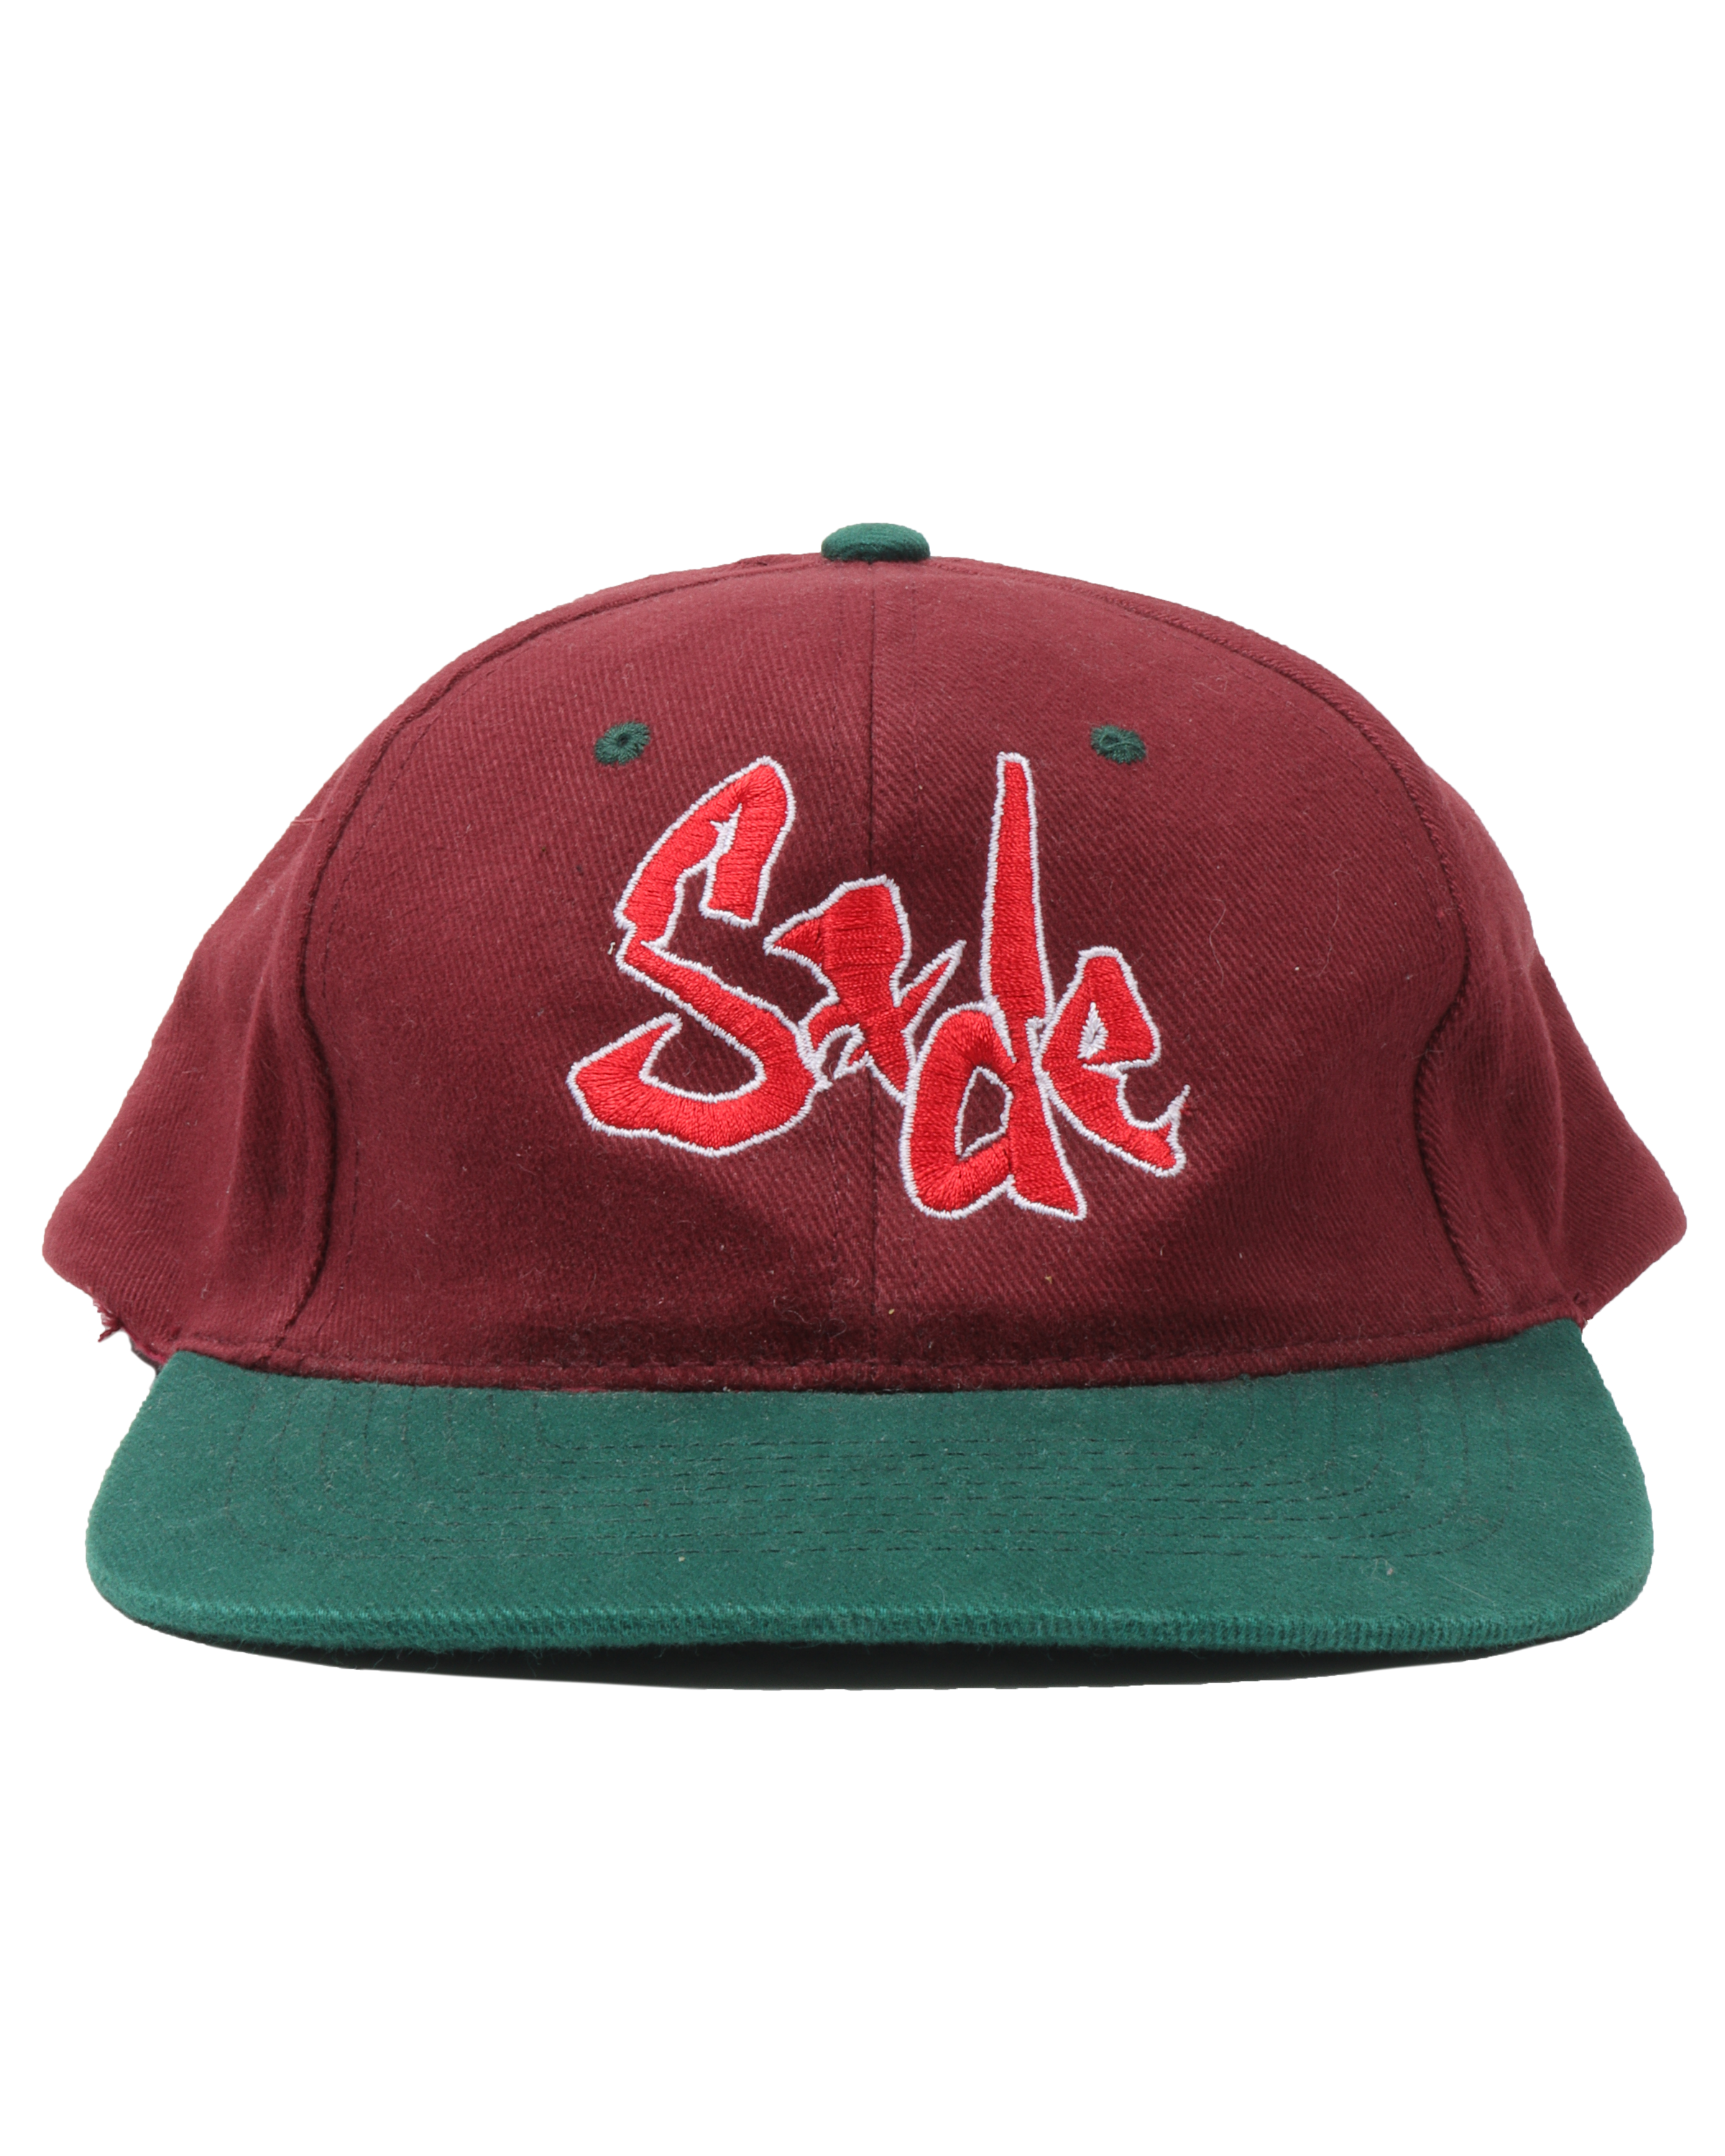 Sade "Stronger Than Pride" Hat